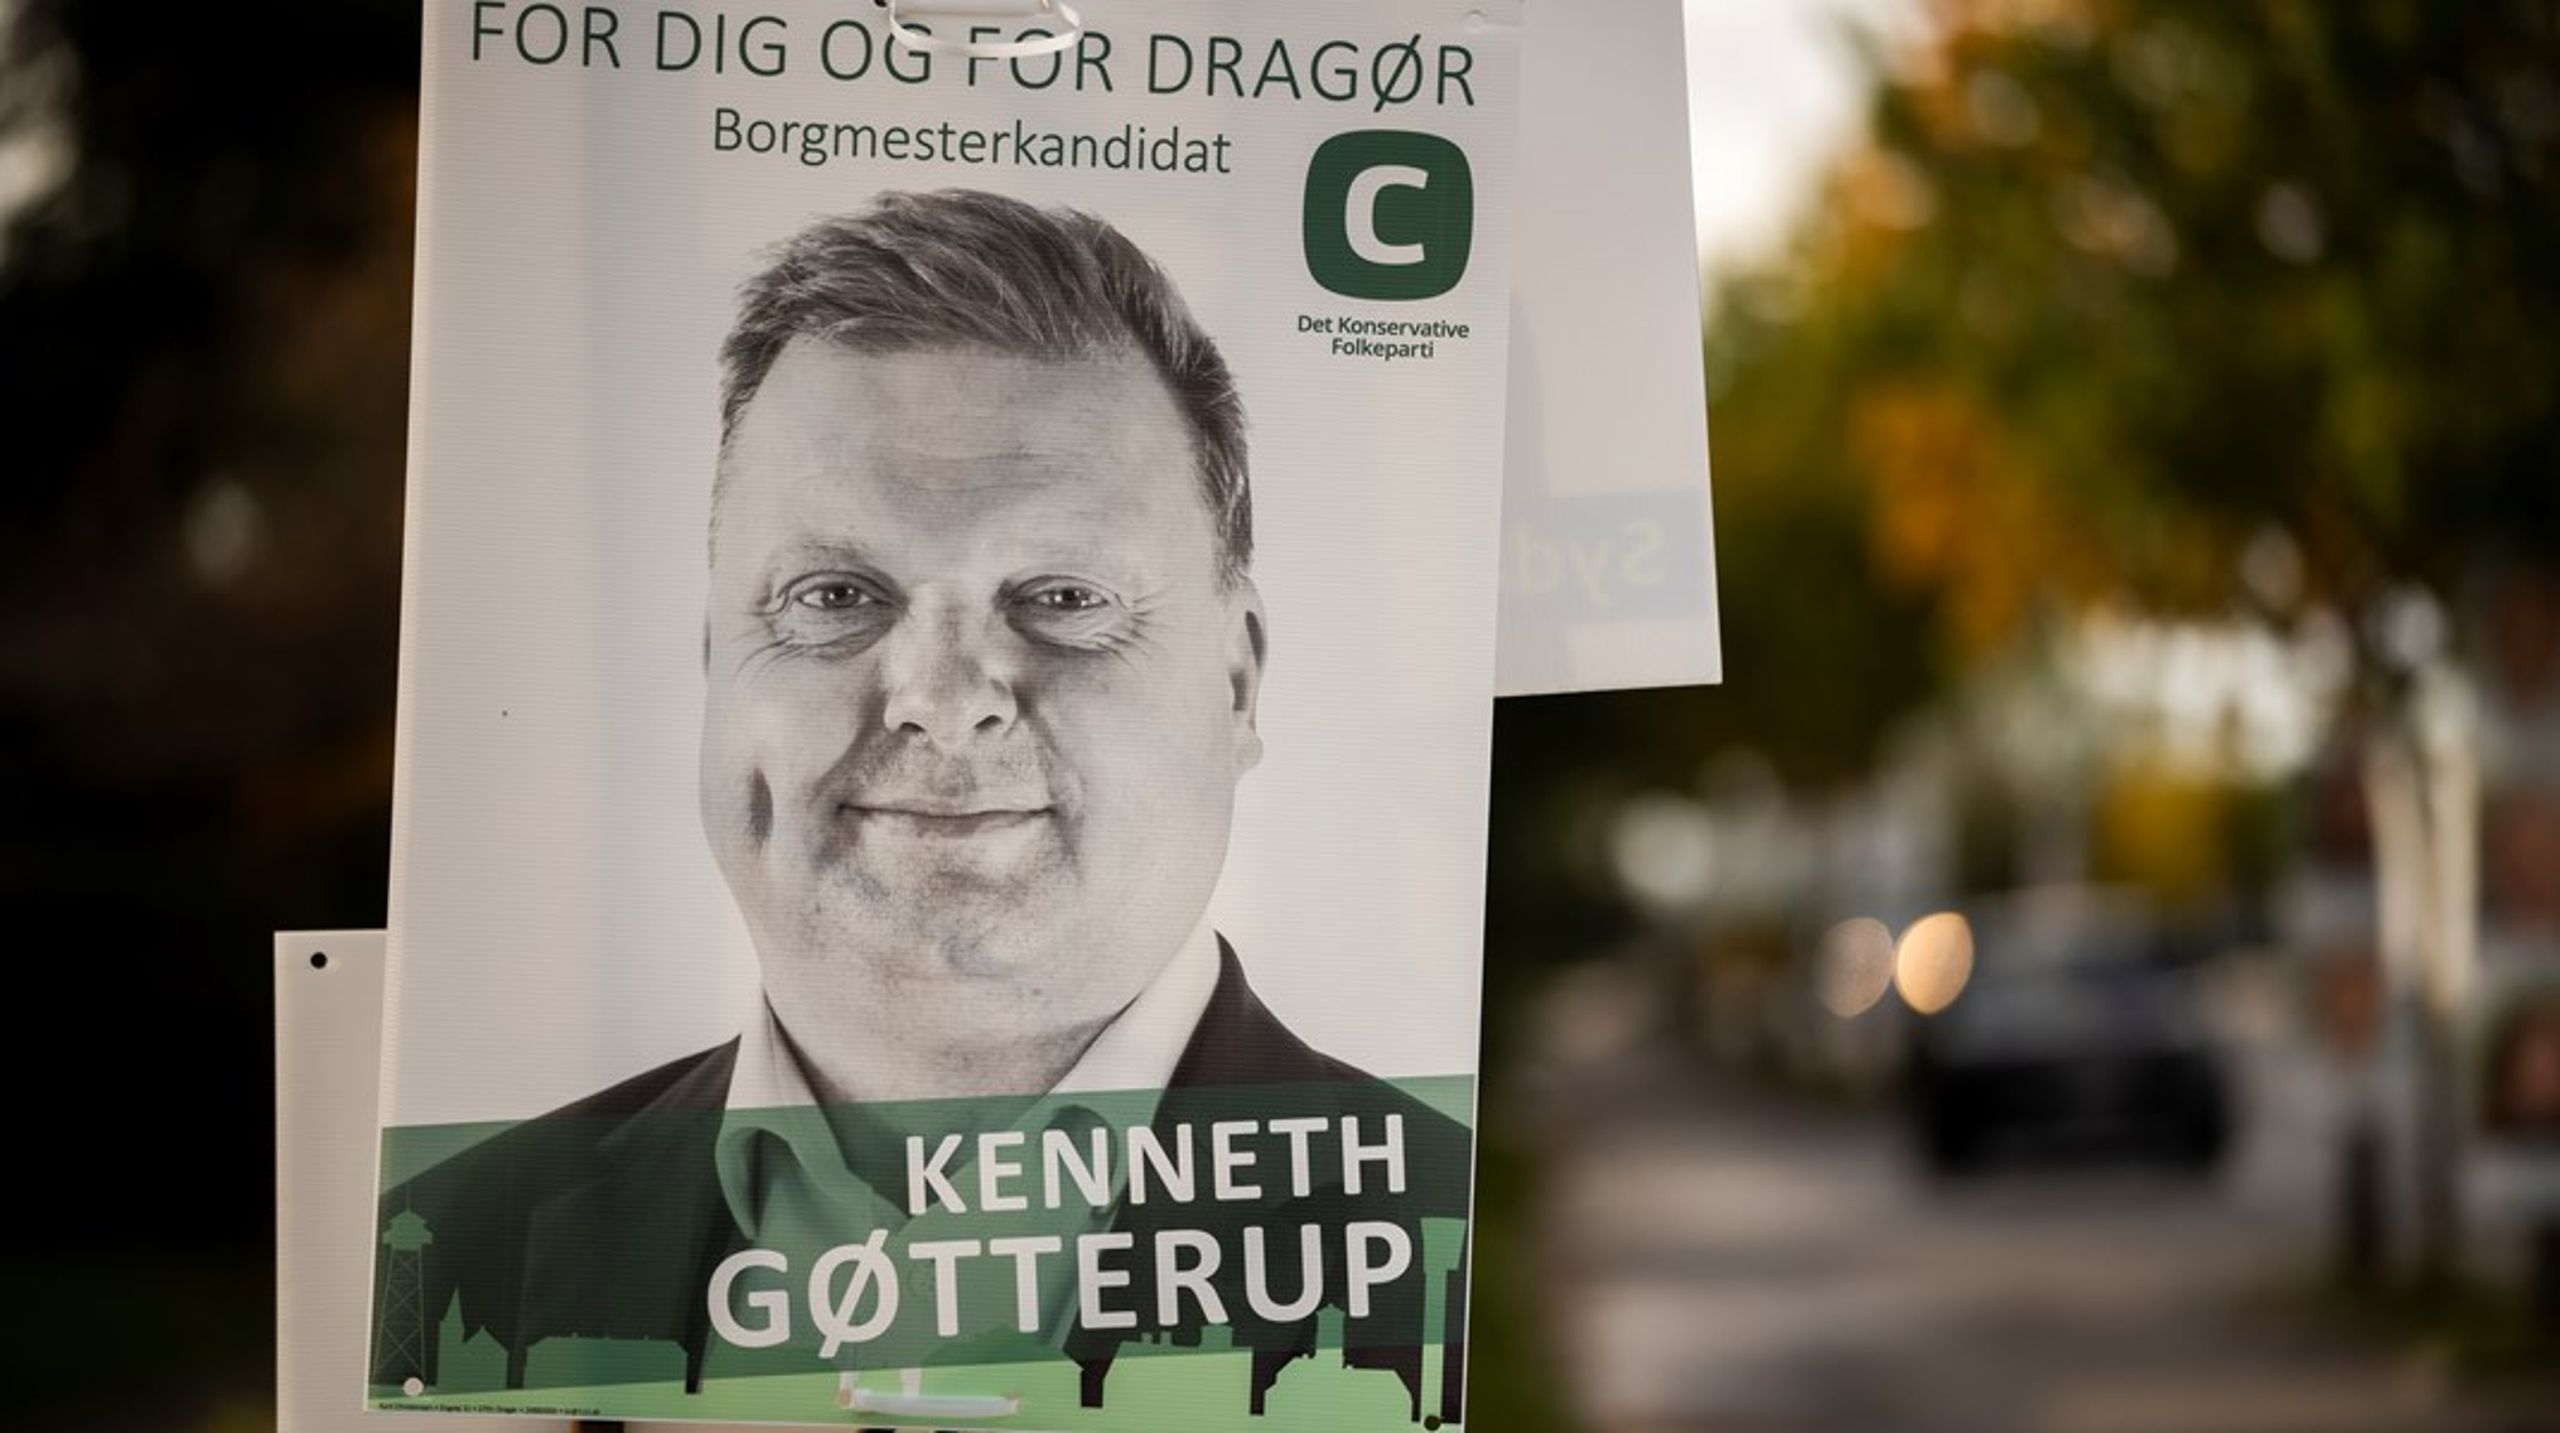 Med&nbsp;Kenneth Gøtterup (K) som ny borgmester i Dragør, har Konservative fået en fremgang på seks borgmesterposter ved årets kommunalvalg. I alt sidder partiet nu på 14 ud af landets 98 borgmesterposter.